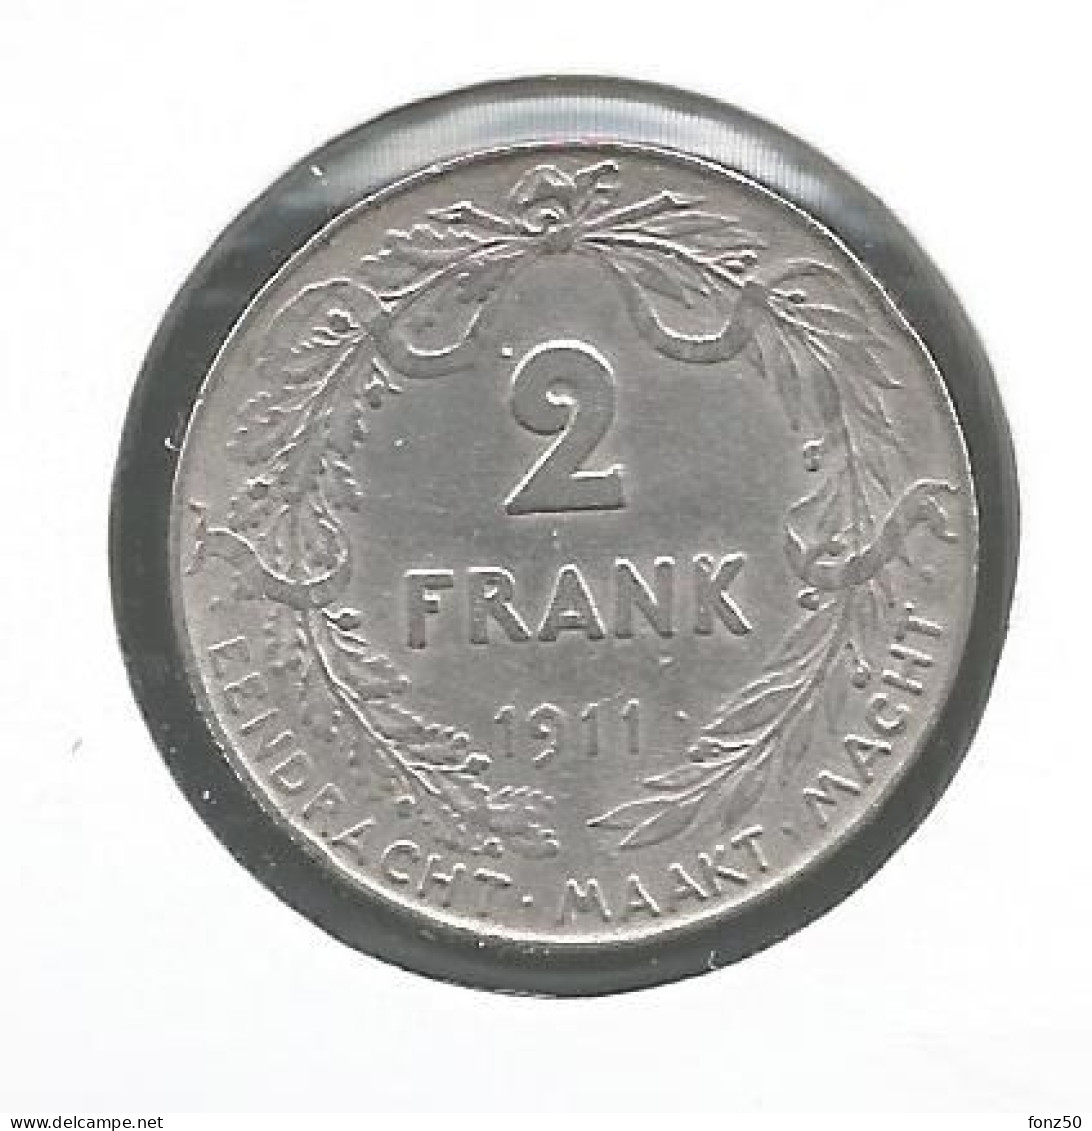 ALBERT I * 2 Frank 1911 Vlaams * Prachtig * Nr 12978 - 2 Franchi